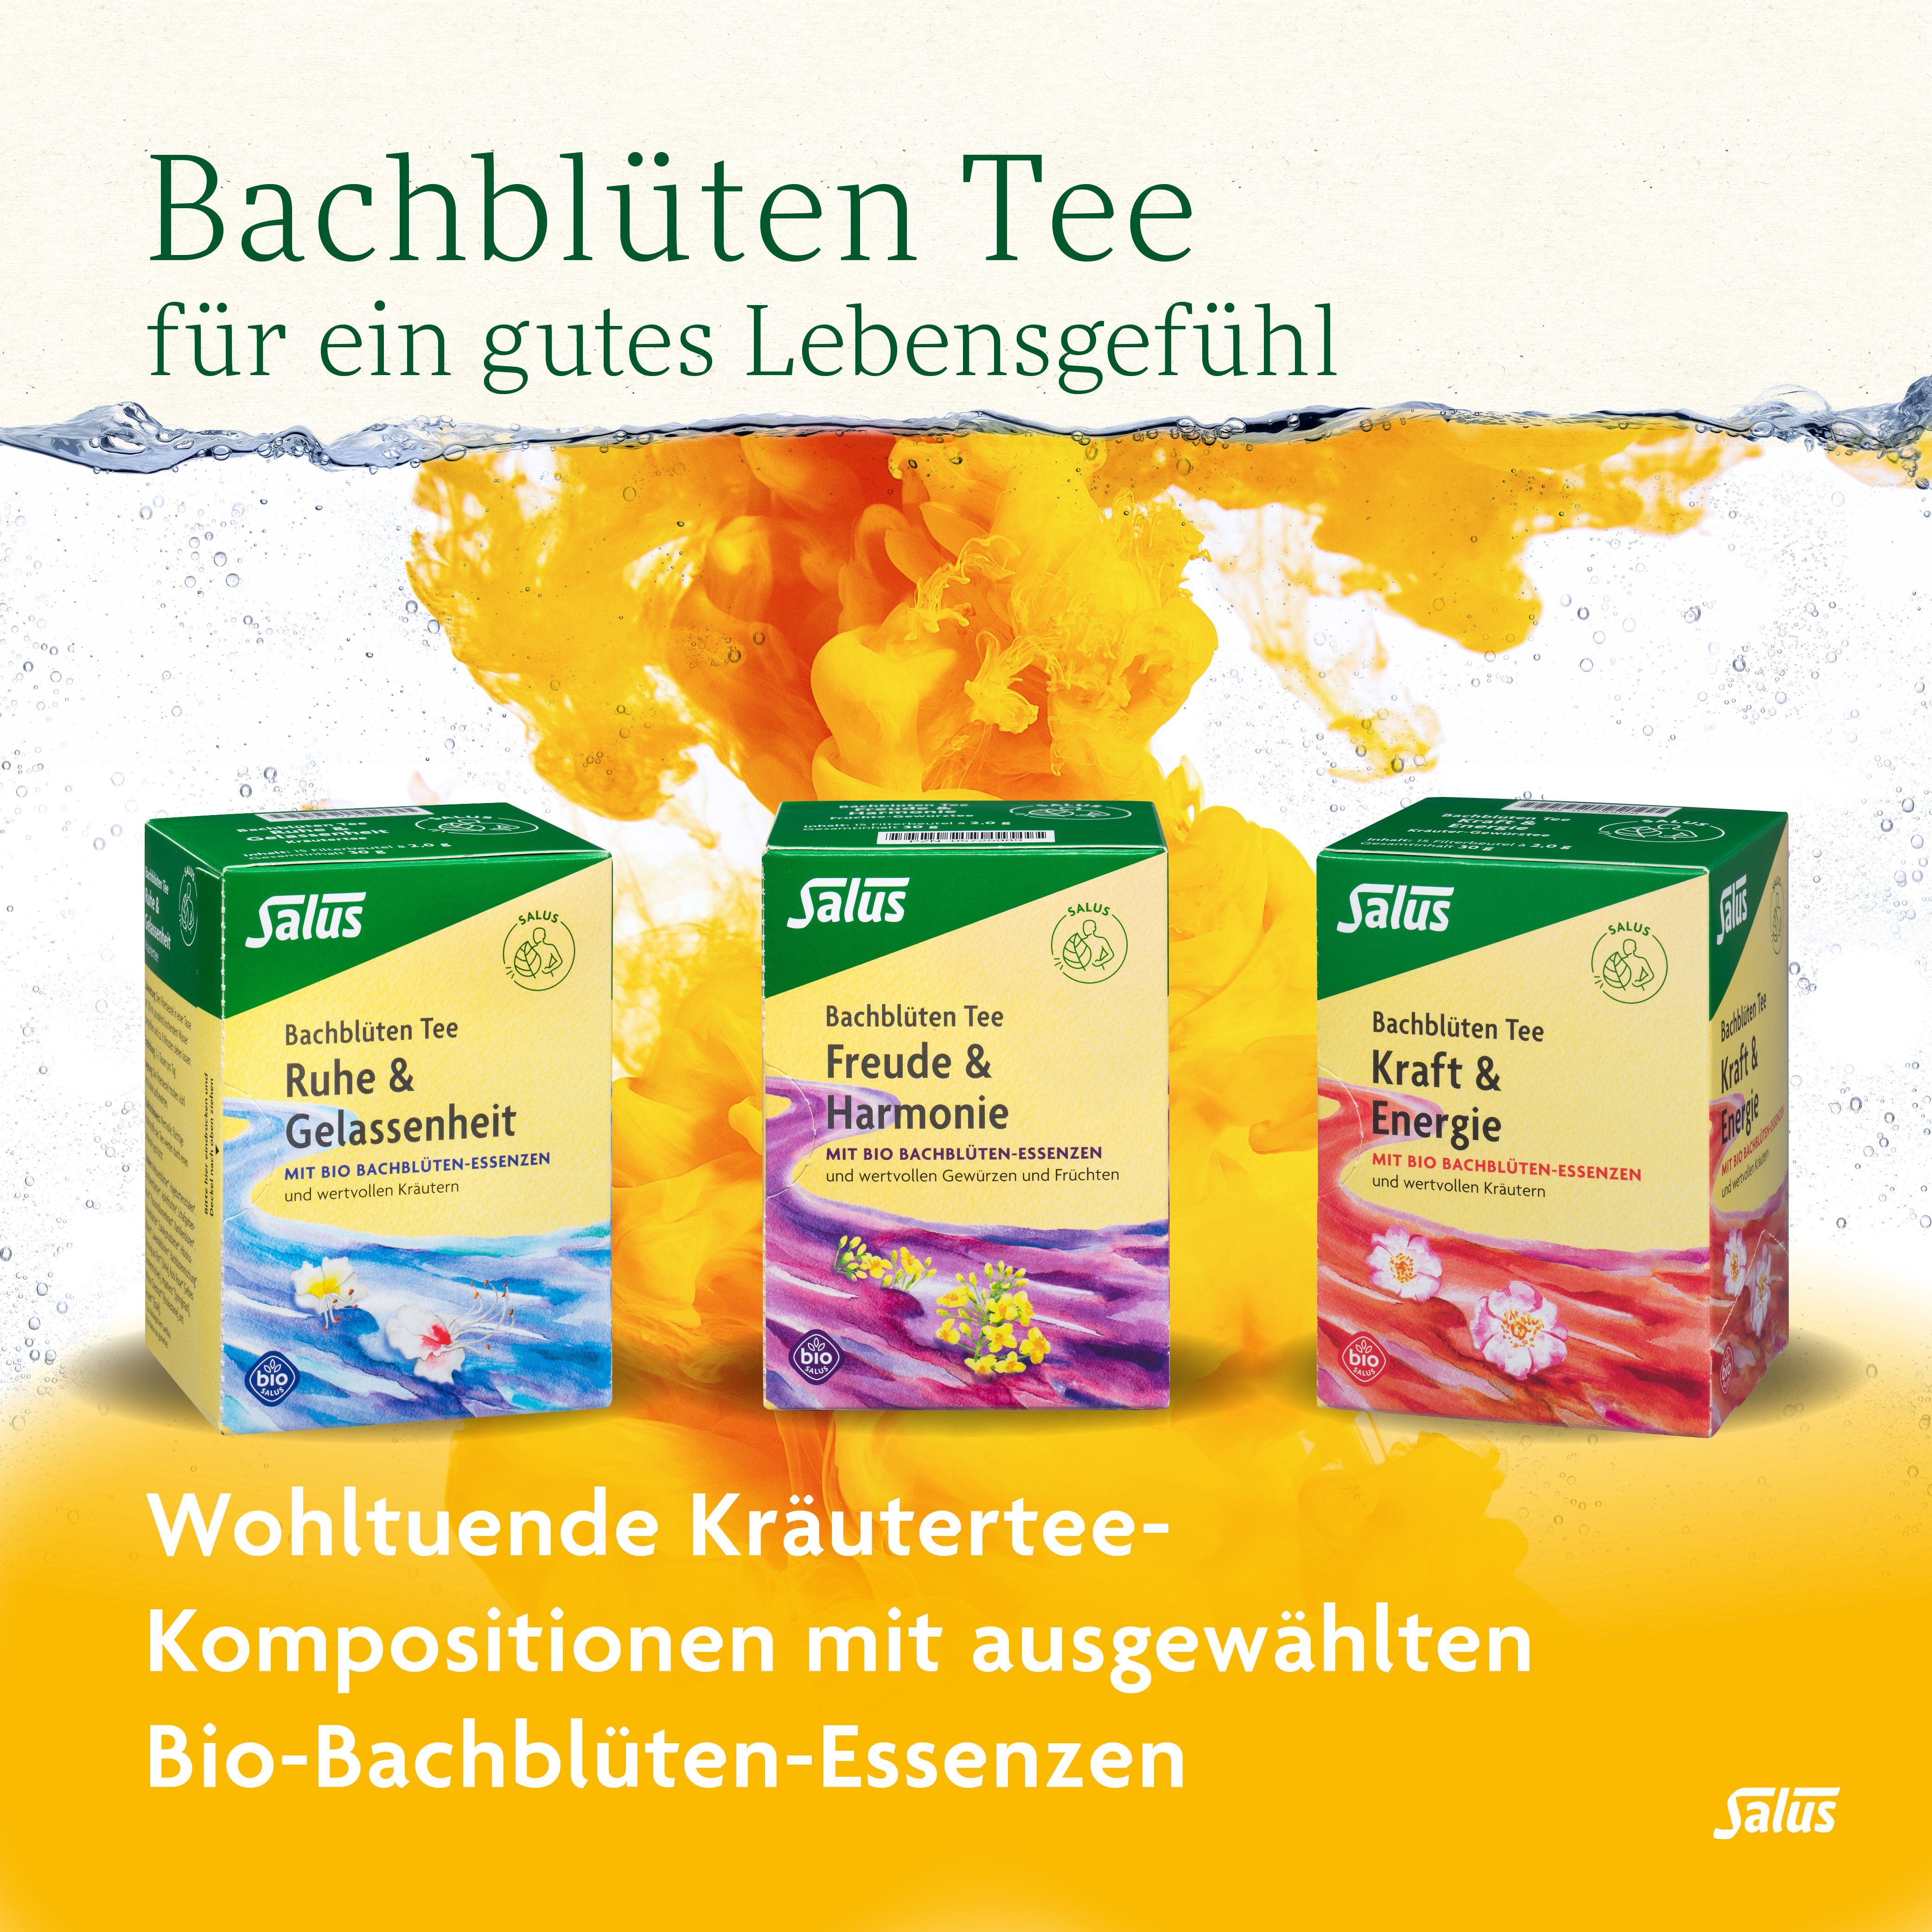 Salus® Bachblüten-Kräutertee Ruhe & Gelassenheit